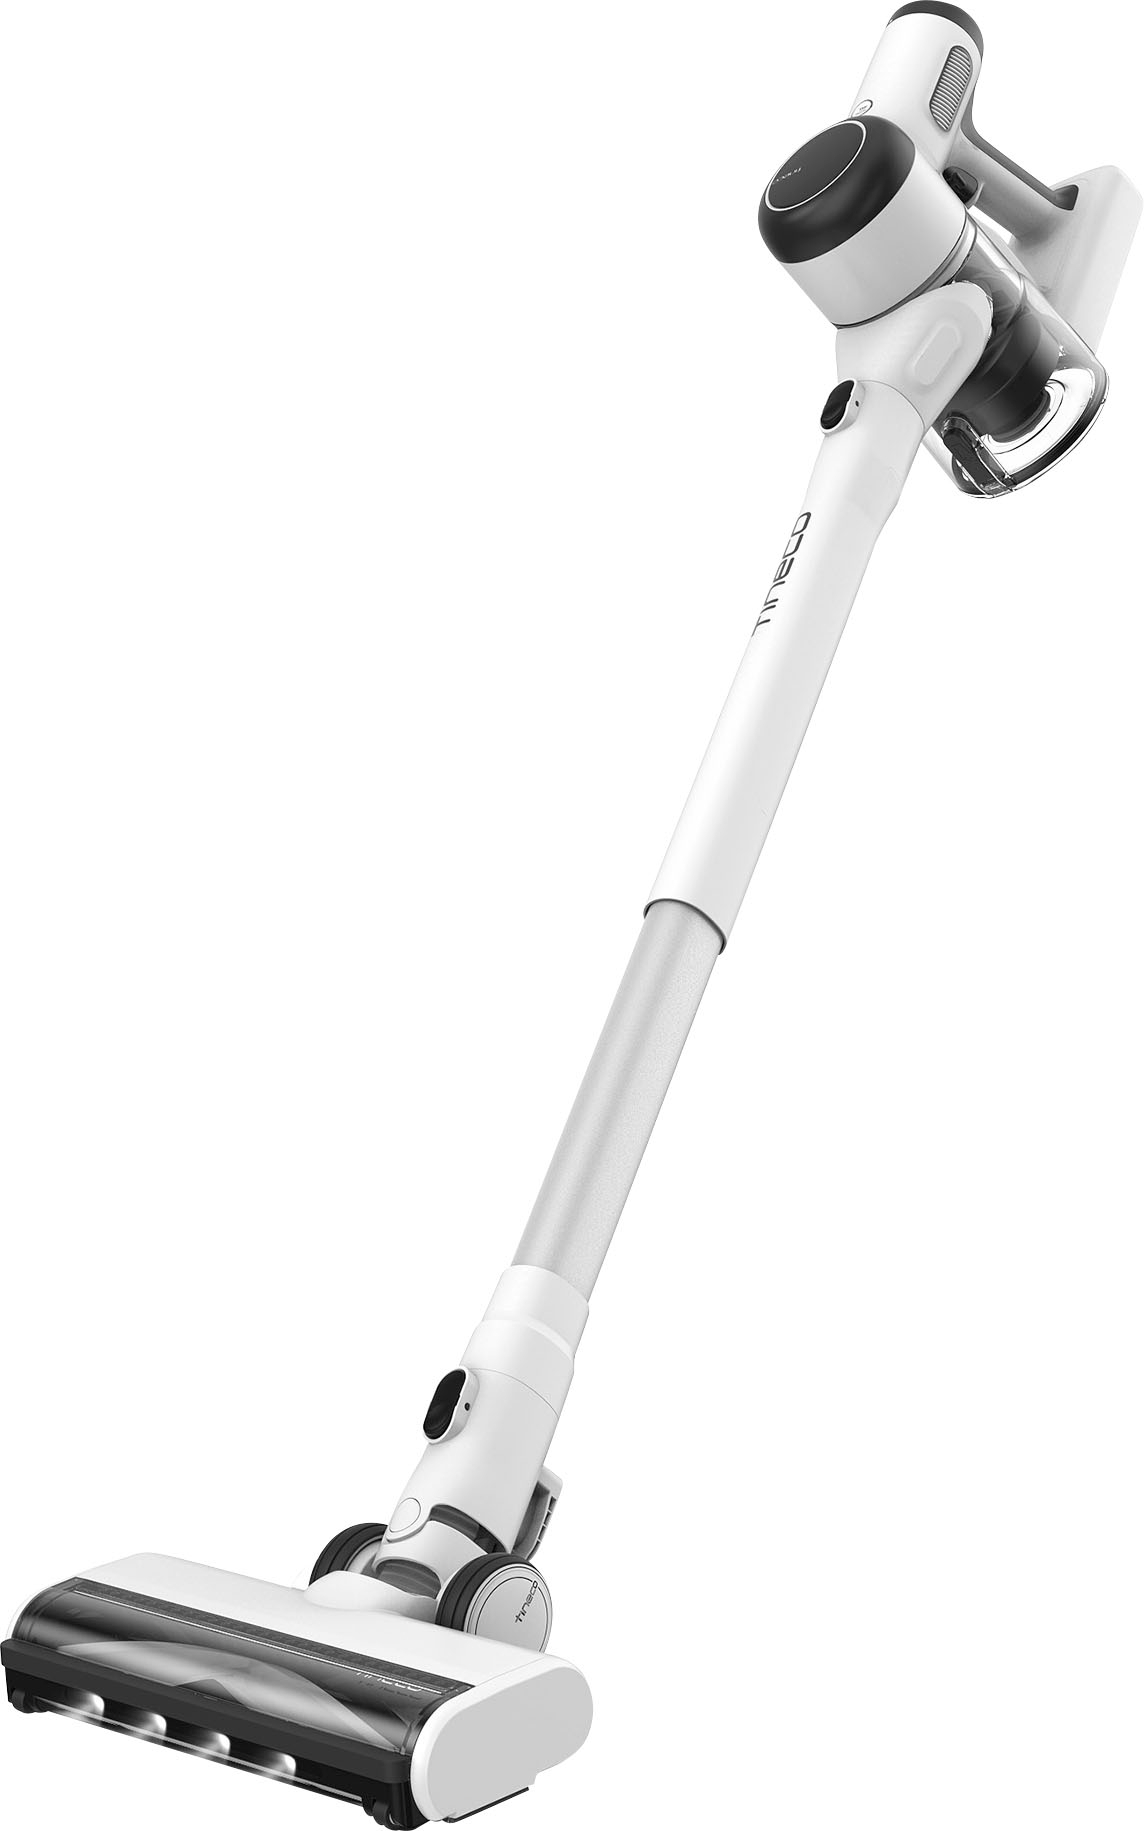 Tineco iFloor 3 Complete Wet/Dry Cordless Stick Vacuum - White